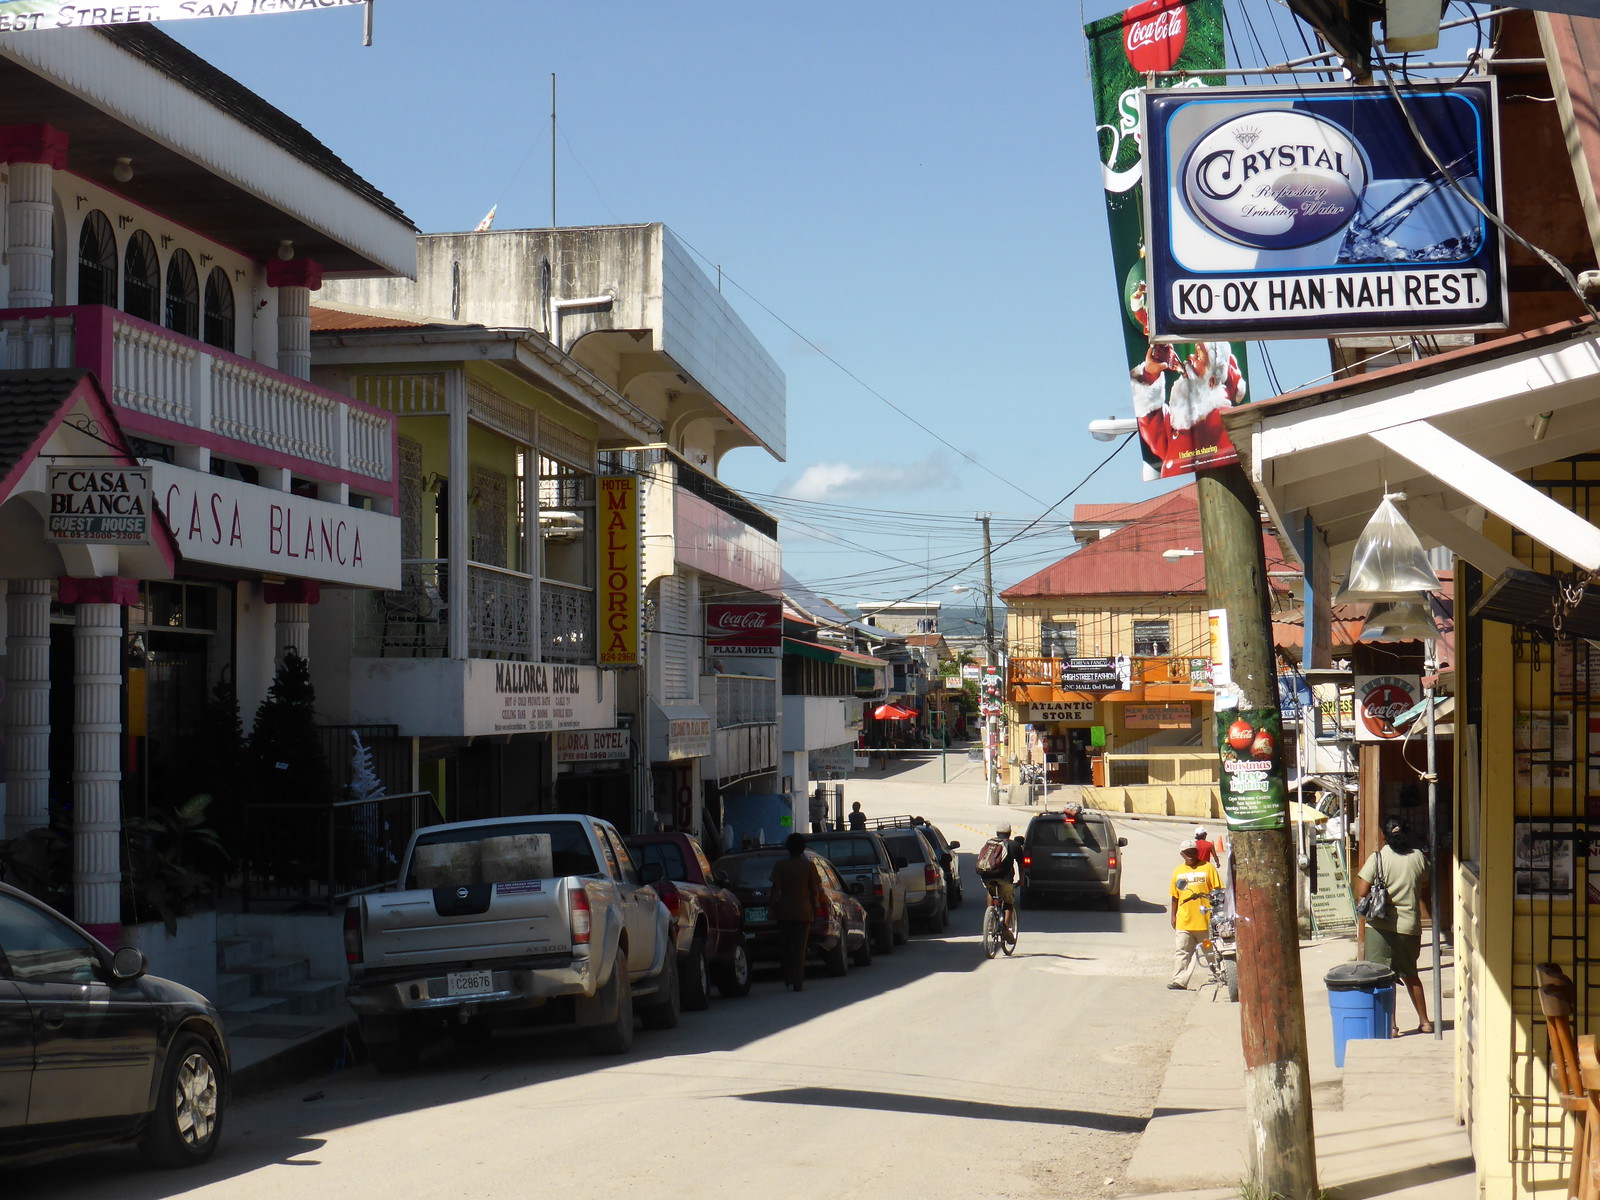 Burns Avenue in San Ignacio